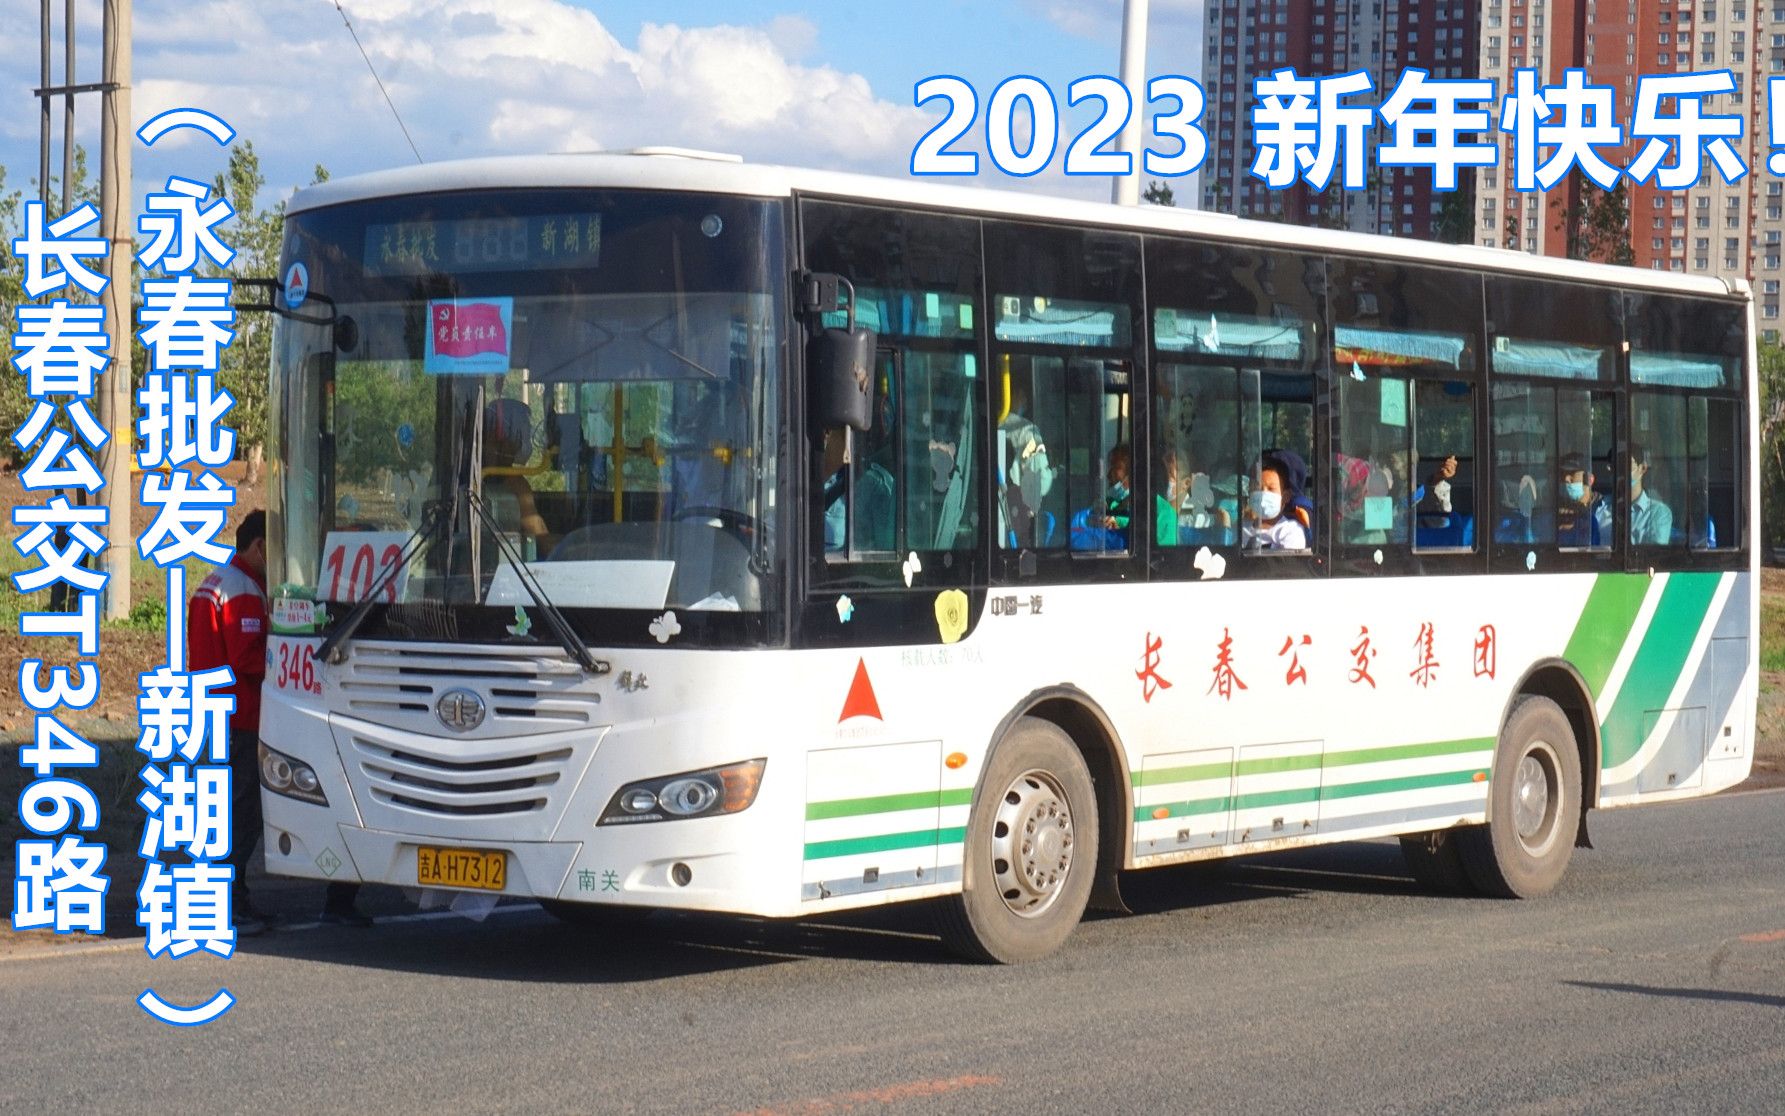 【2023新年快乐】长春公交T346路（永春批发——新湖镇）第一视角POV